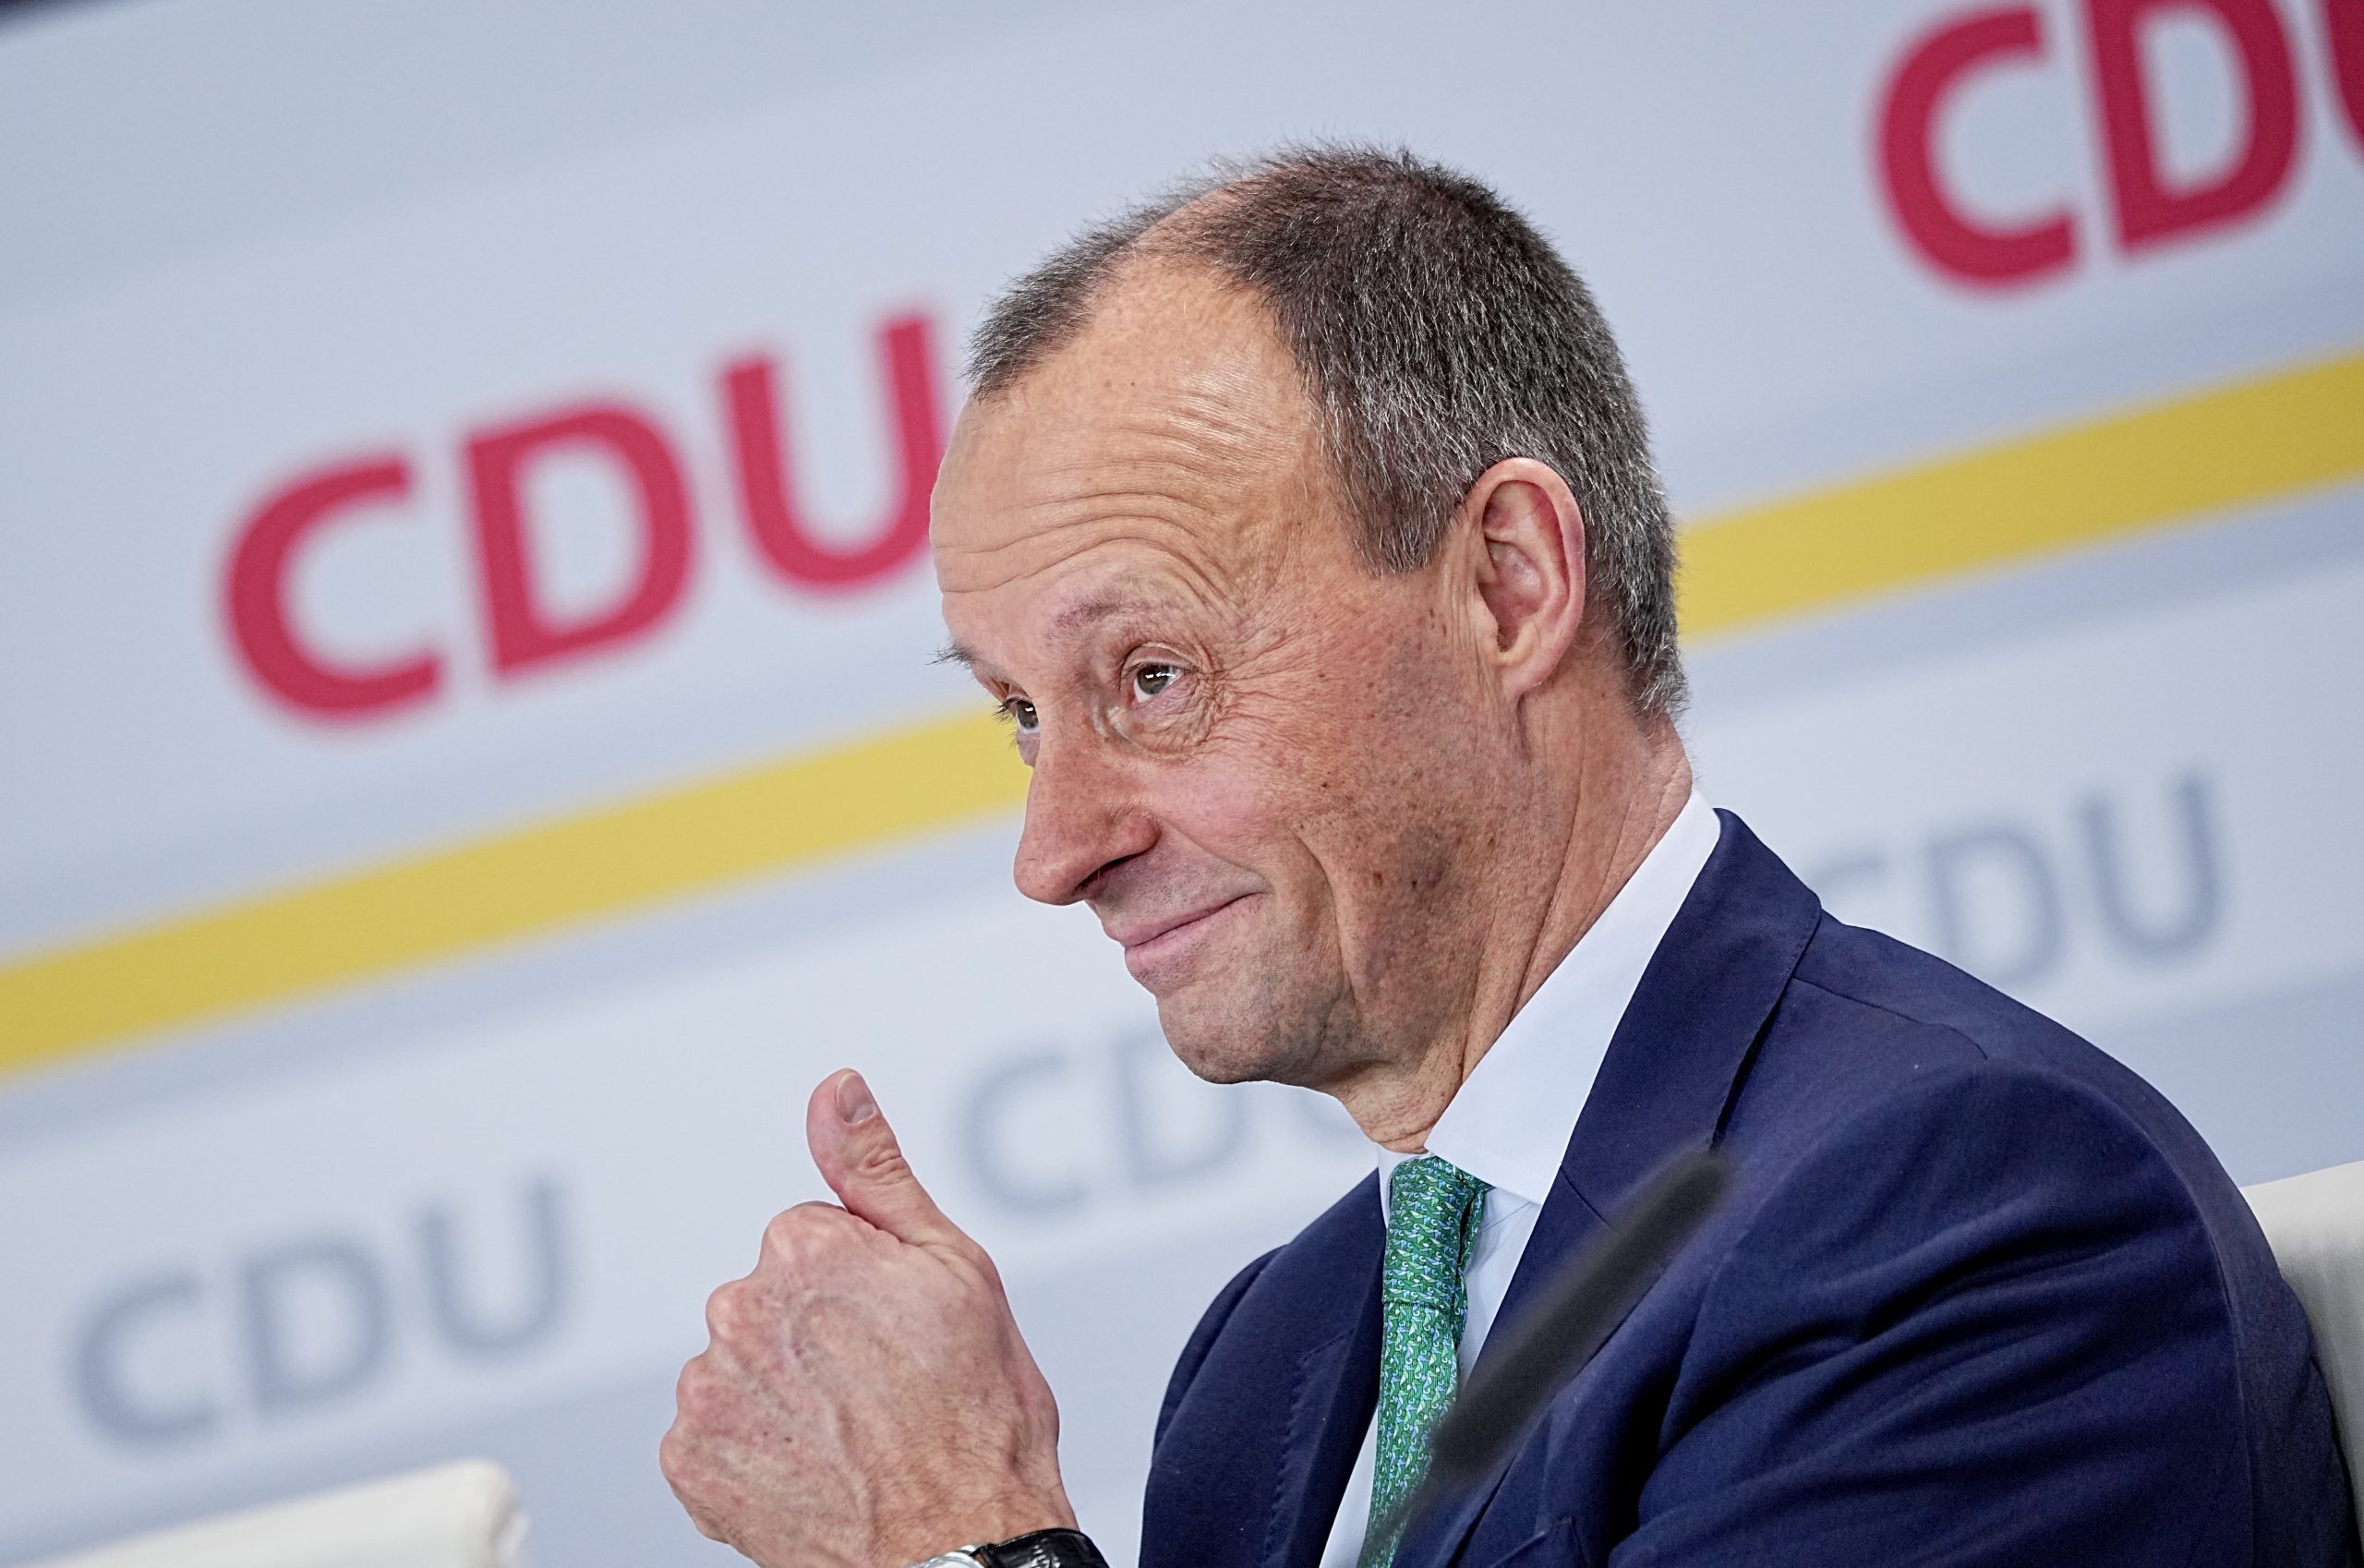 Friedrich Merz ist mit fast 95 Prozent zum CDU-Parteivorsitzenden gewählt worden. Eine Rückkehr zur Macht könne für die CDU sehr lange dauern, warnte er.